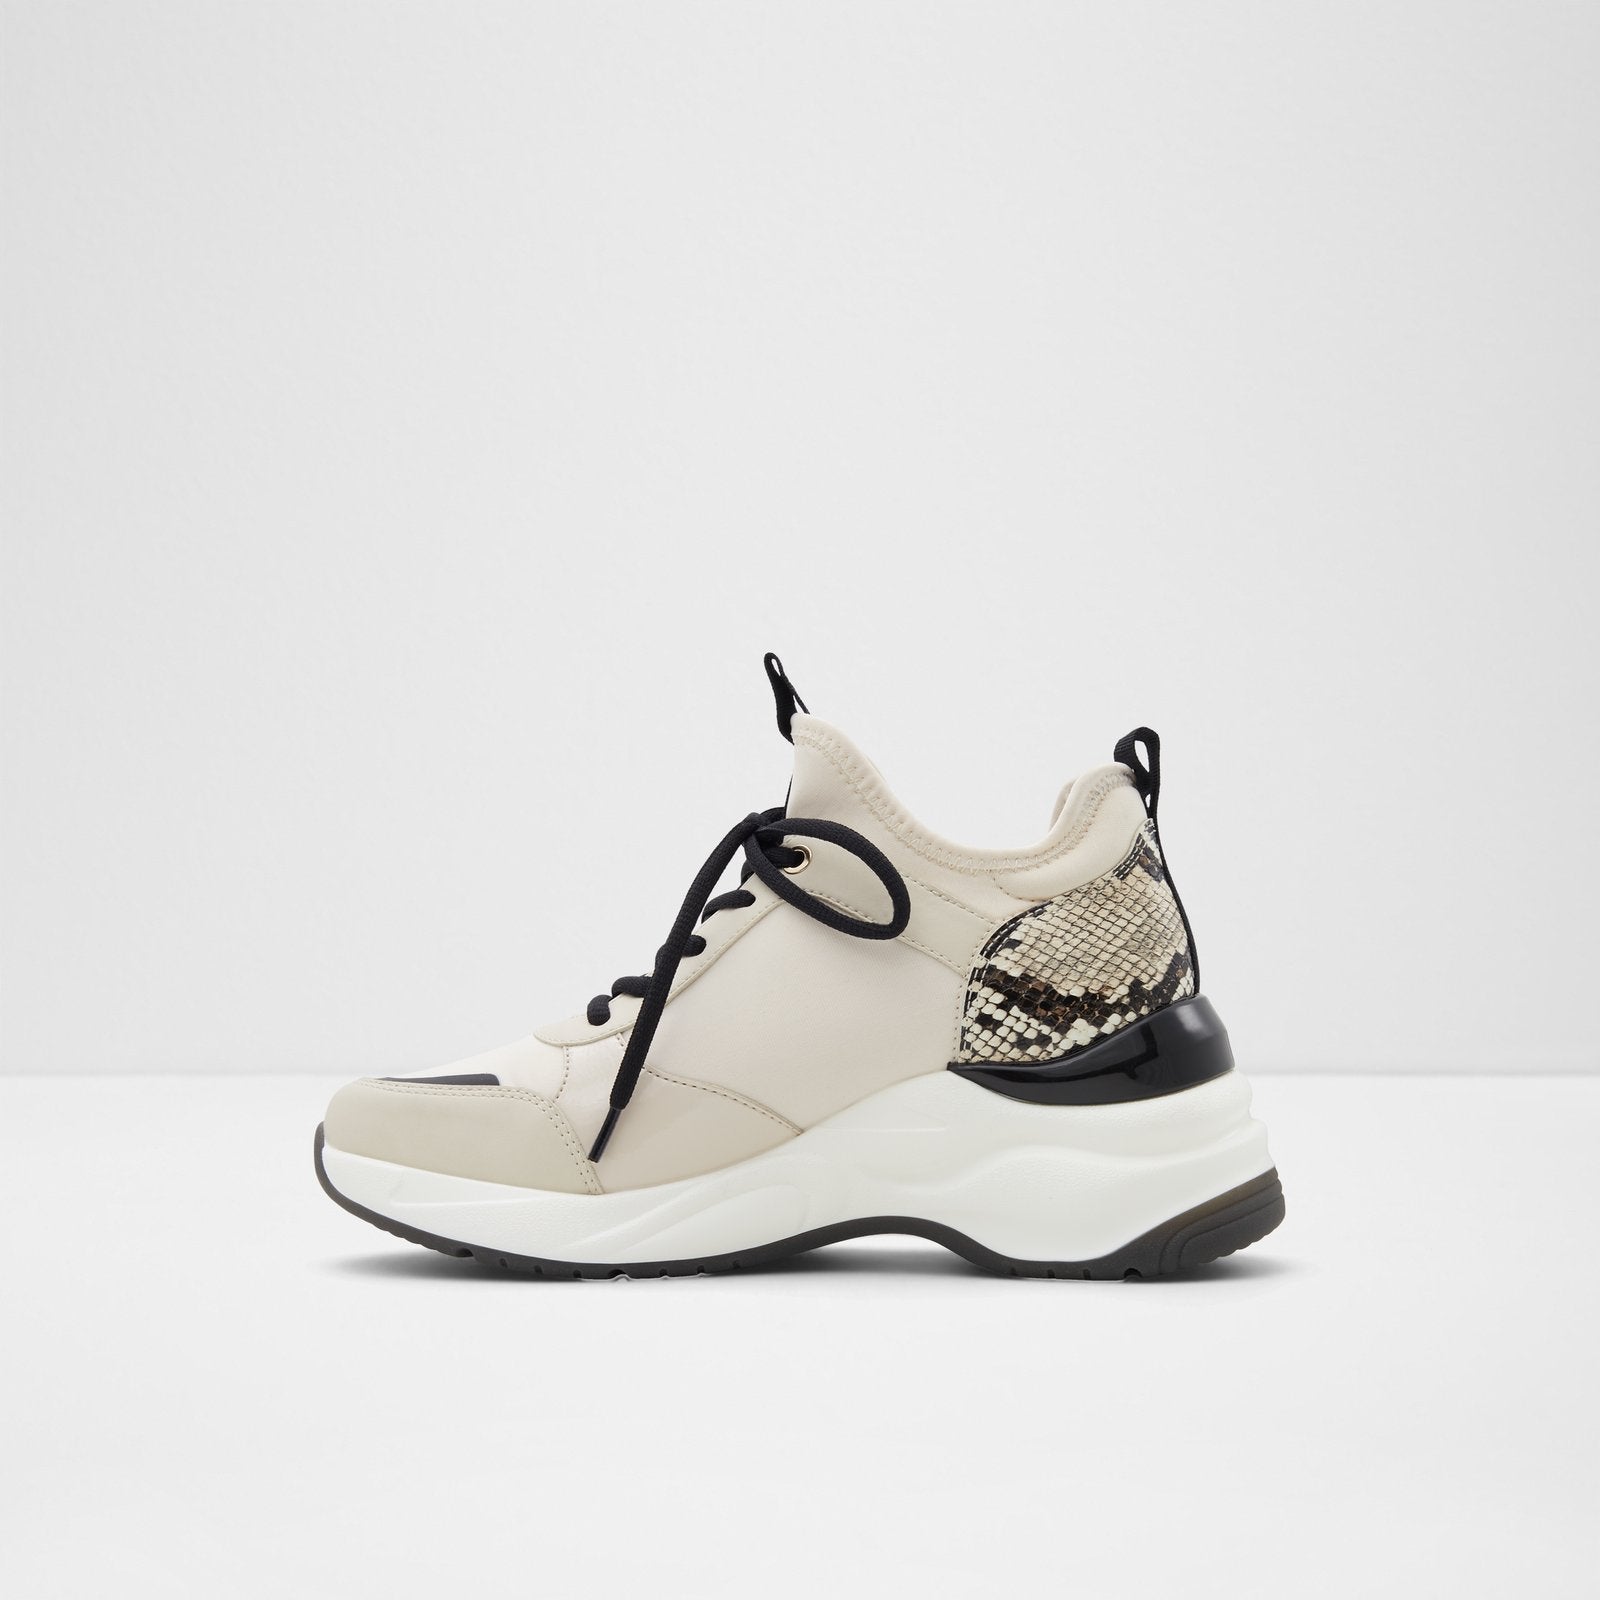 Kralove / Sneakers Women Shoes - Bone - ALDO KSA